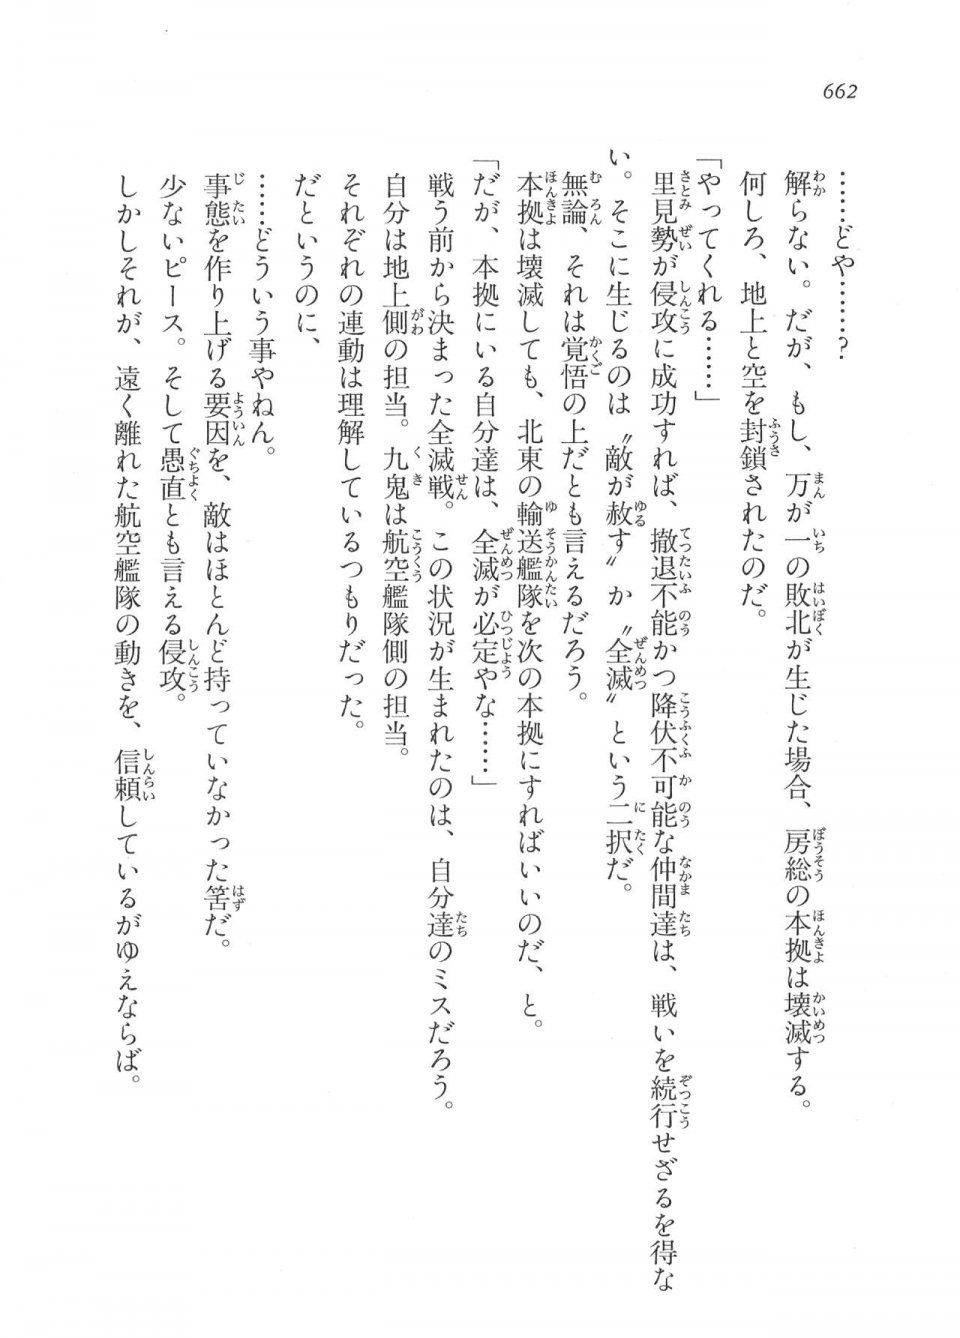 Kyoukai Senjou no Horizon LN Vol 17(7B) - Photo #664